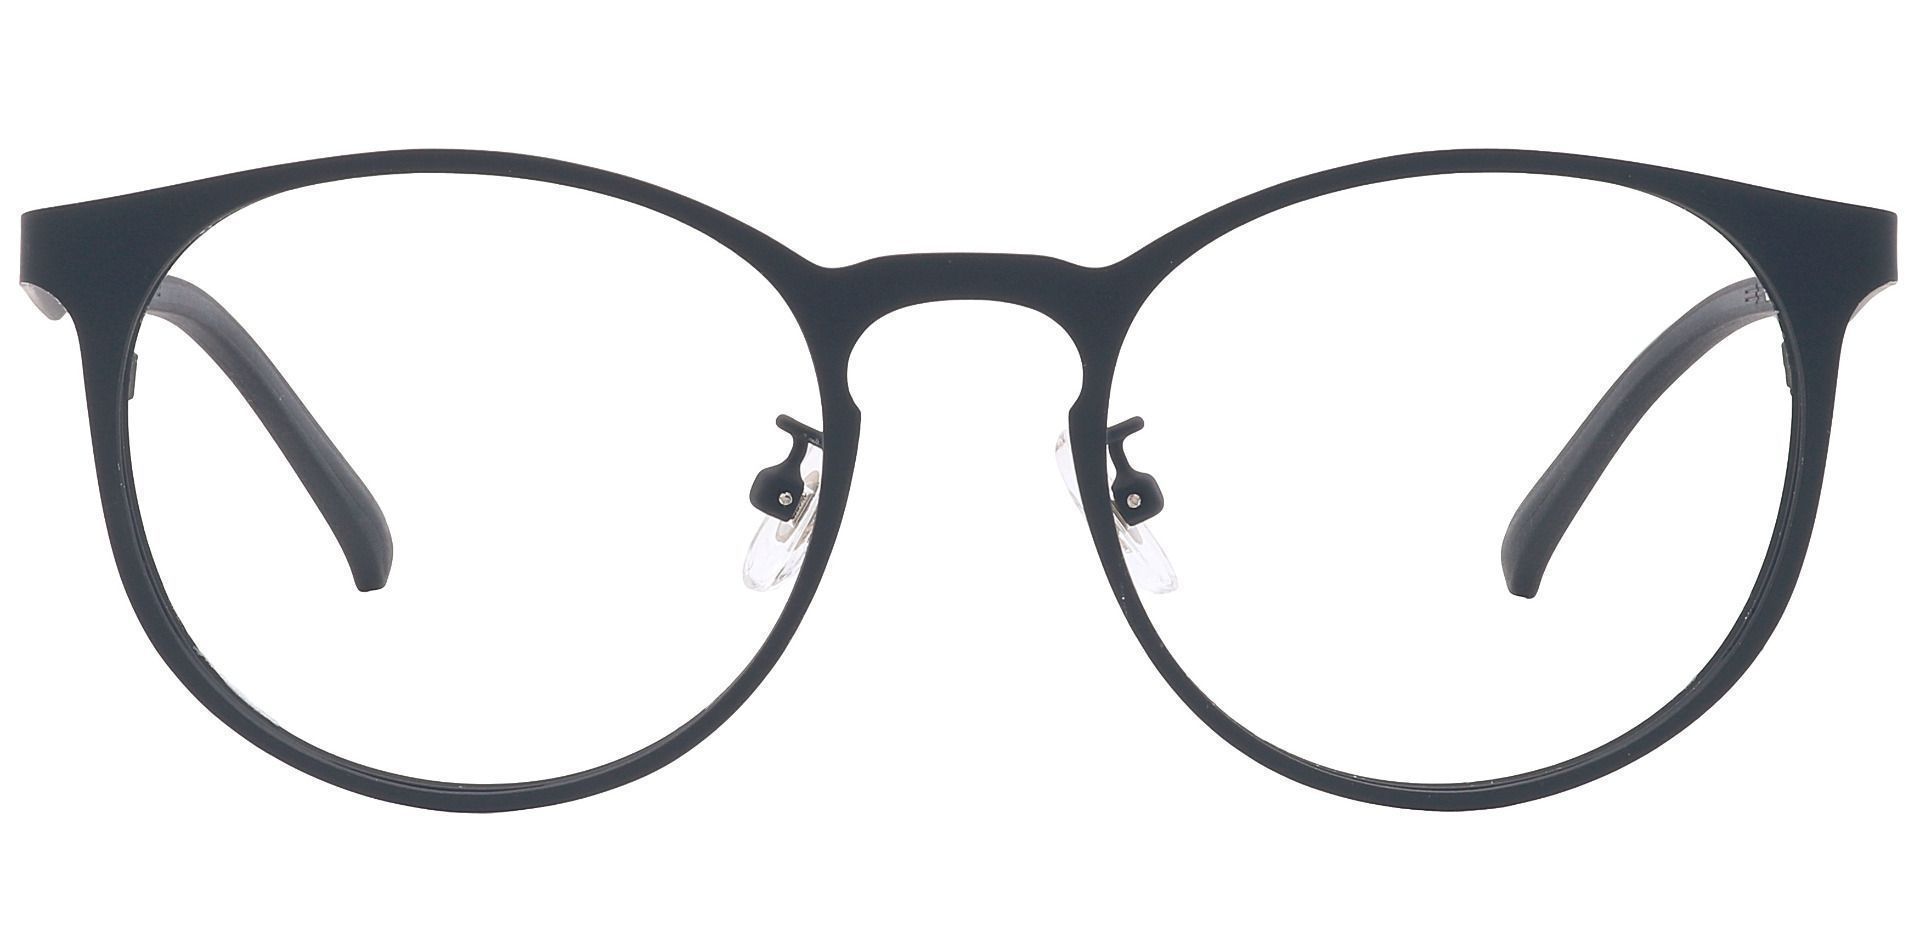 Wallace Oval Prescription Glasses - Black